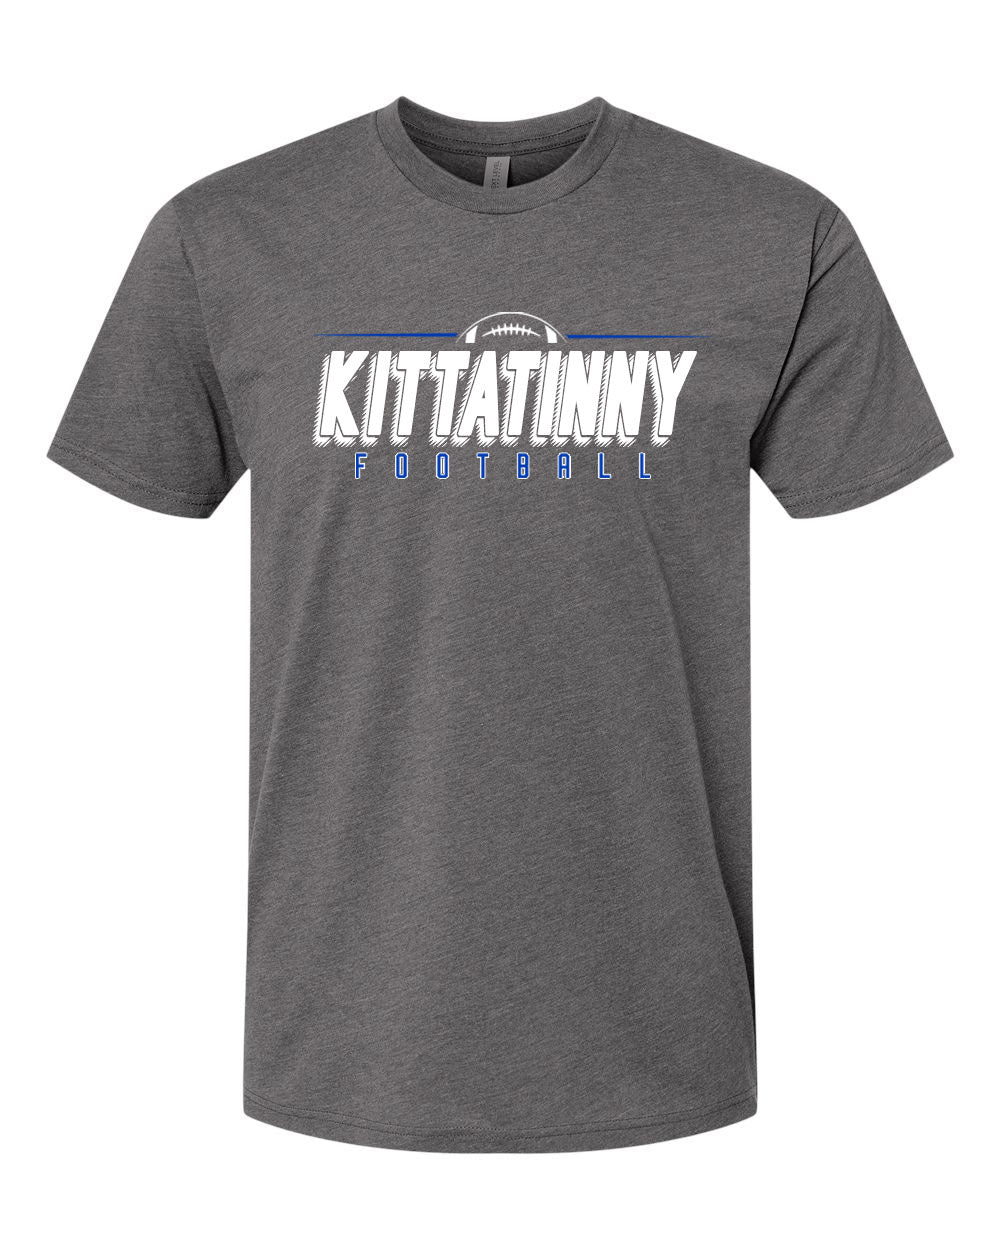 Kittatinny Football Design 13 T-Shirt